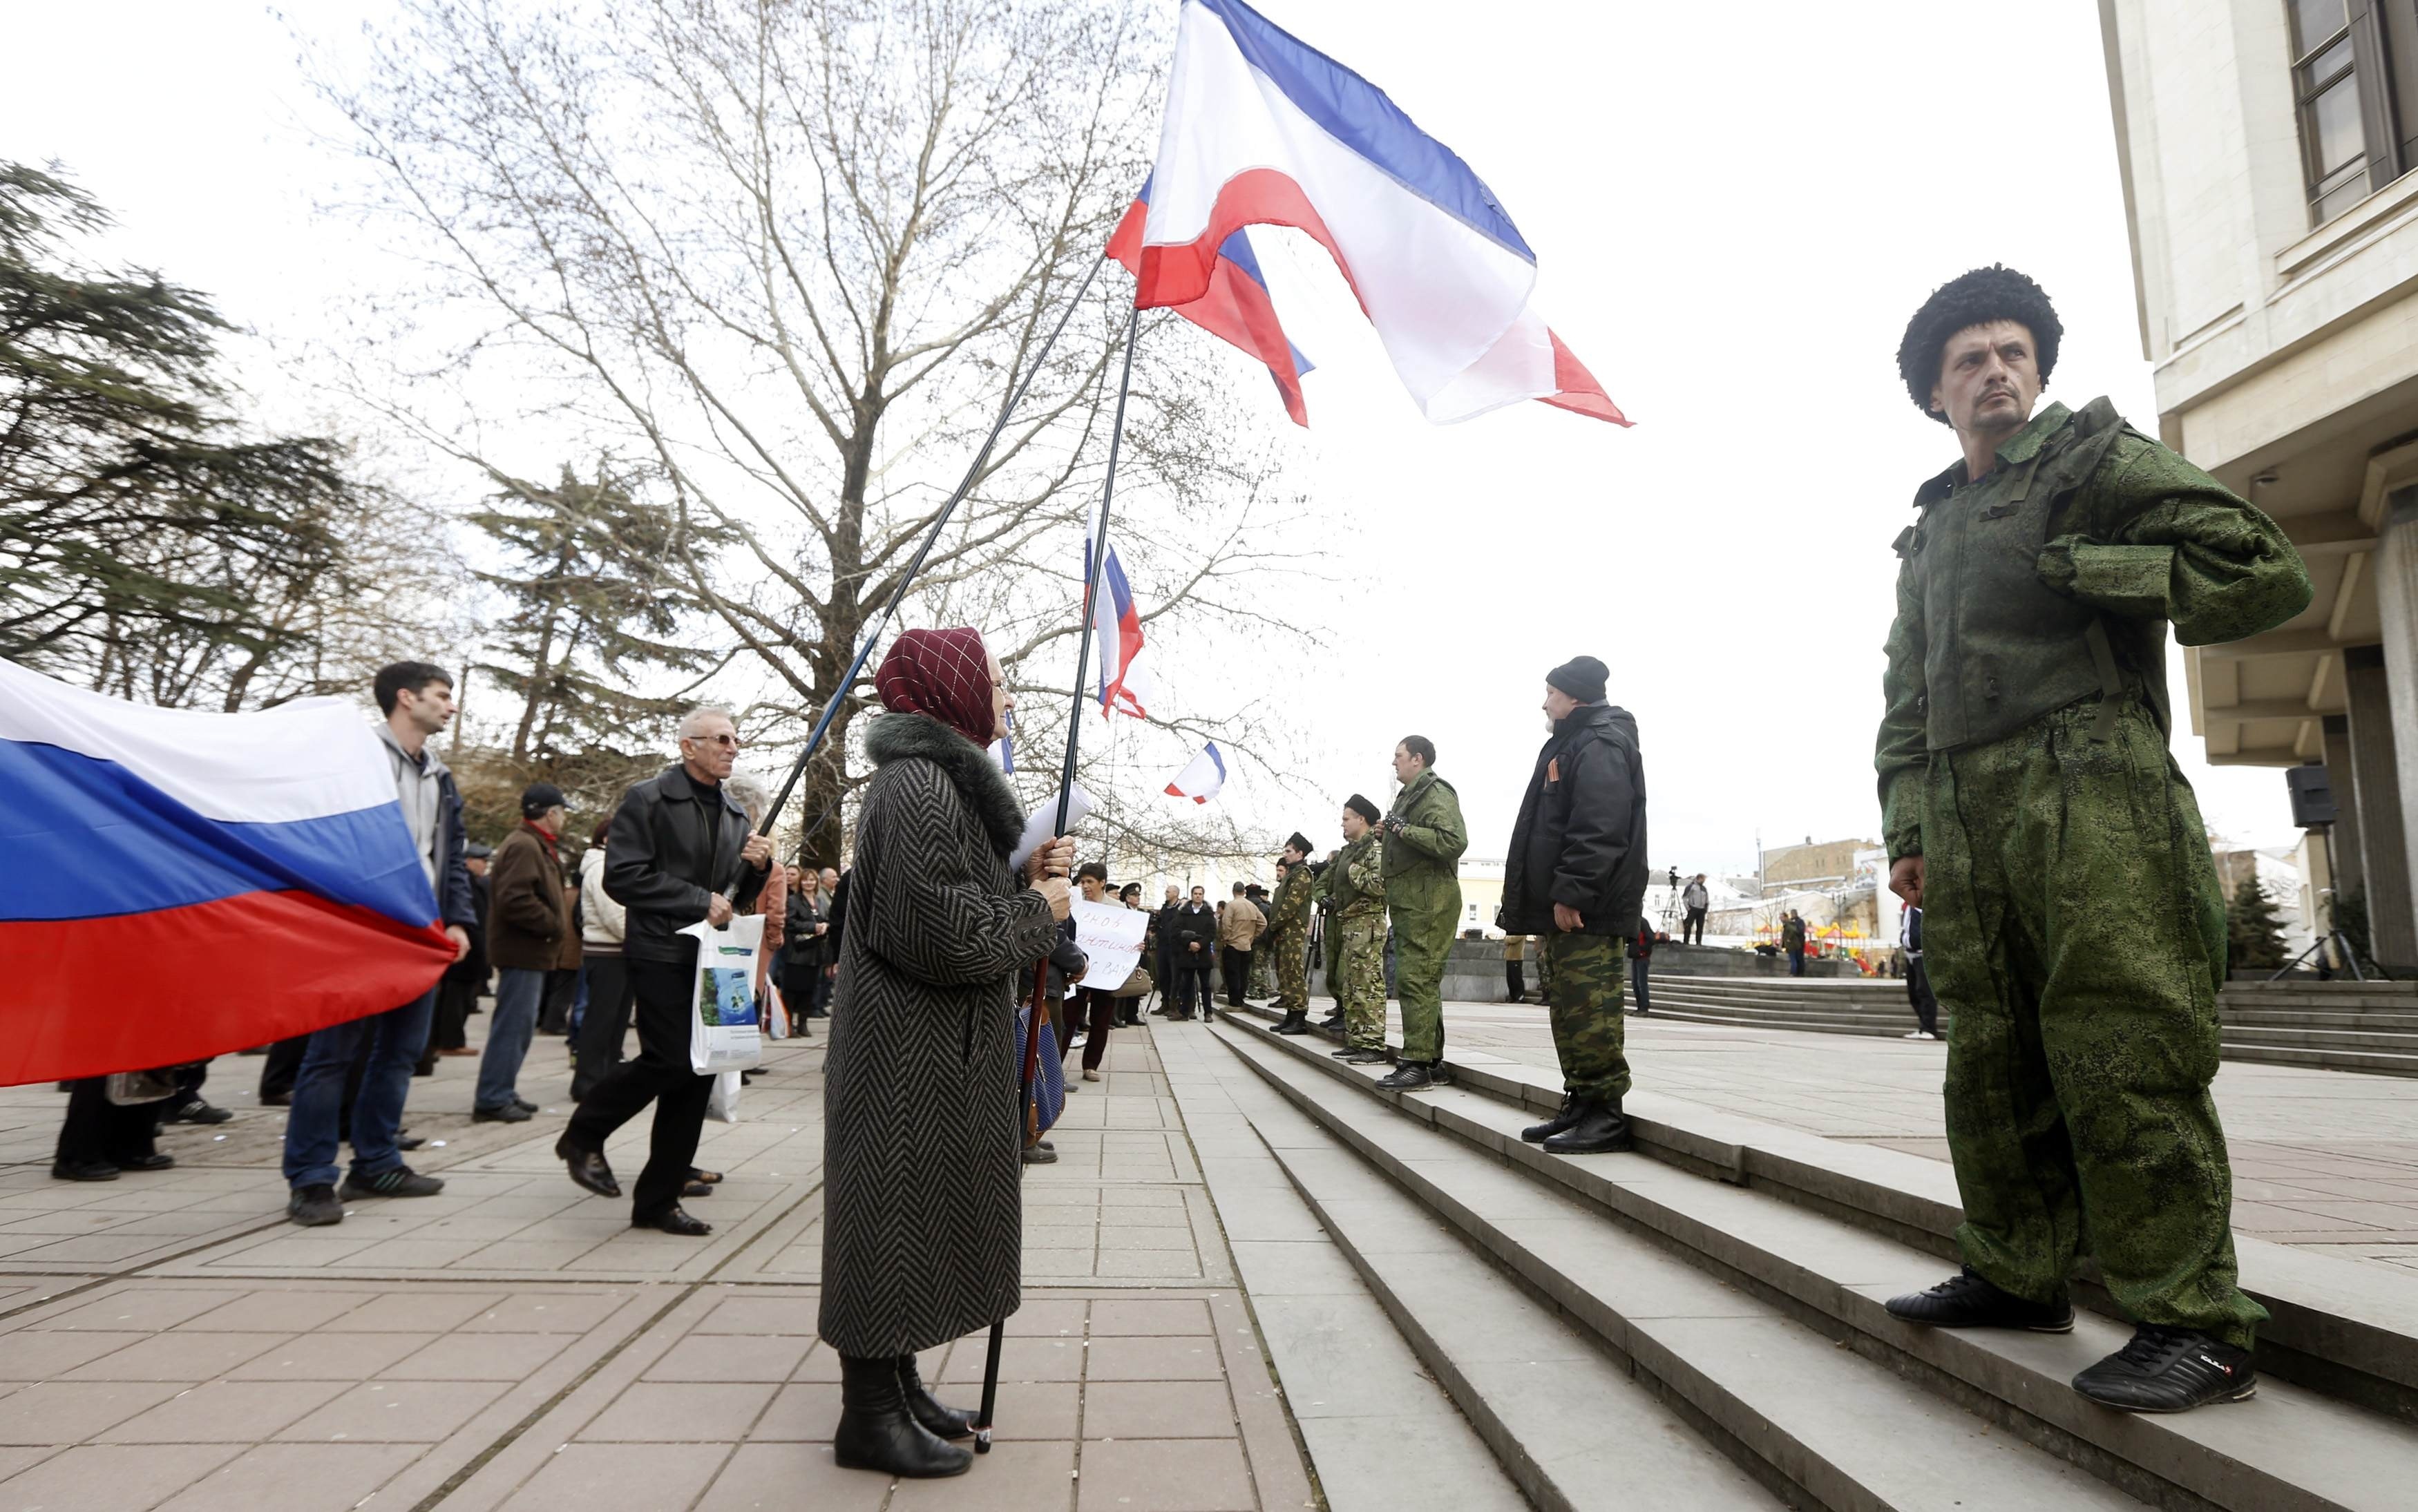 Мітинг проросійських сил та озброєні бойовики. Сімферополь, лютий 2014 року. Фото Reuters